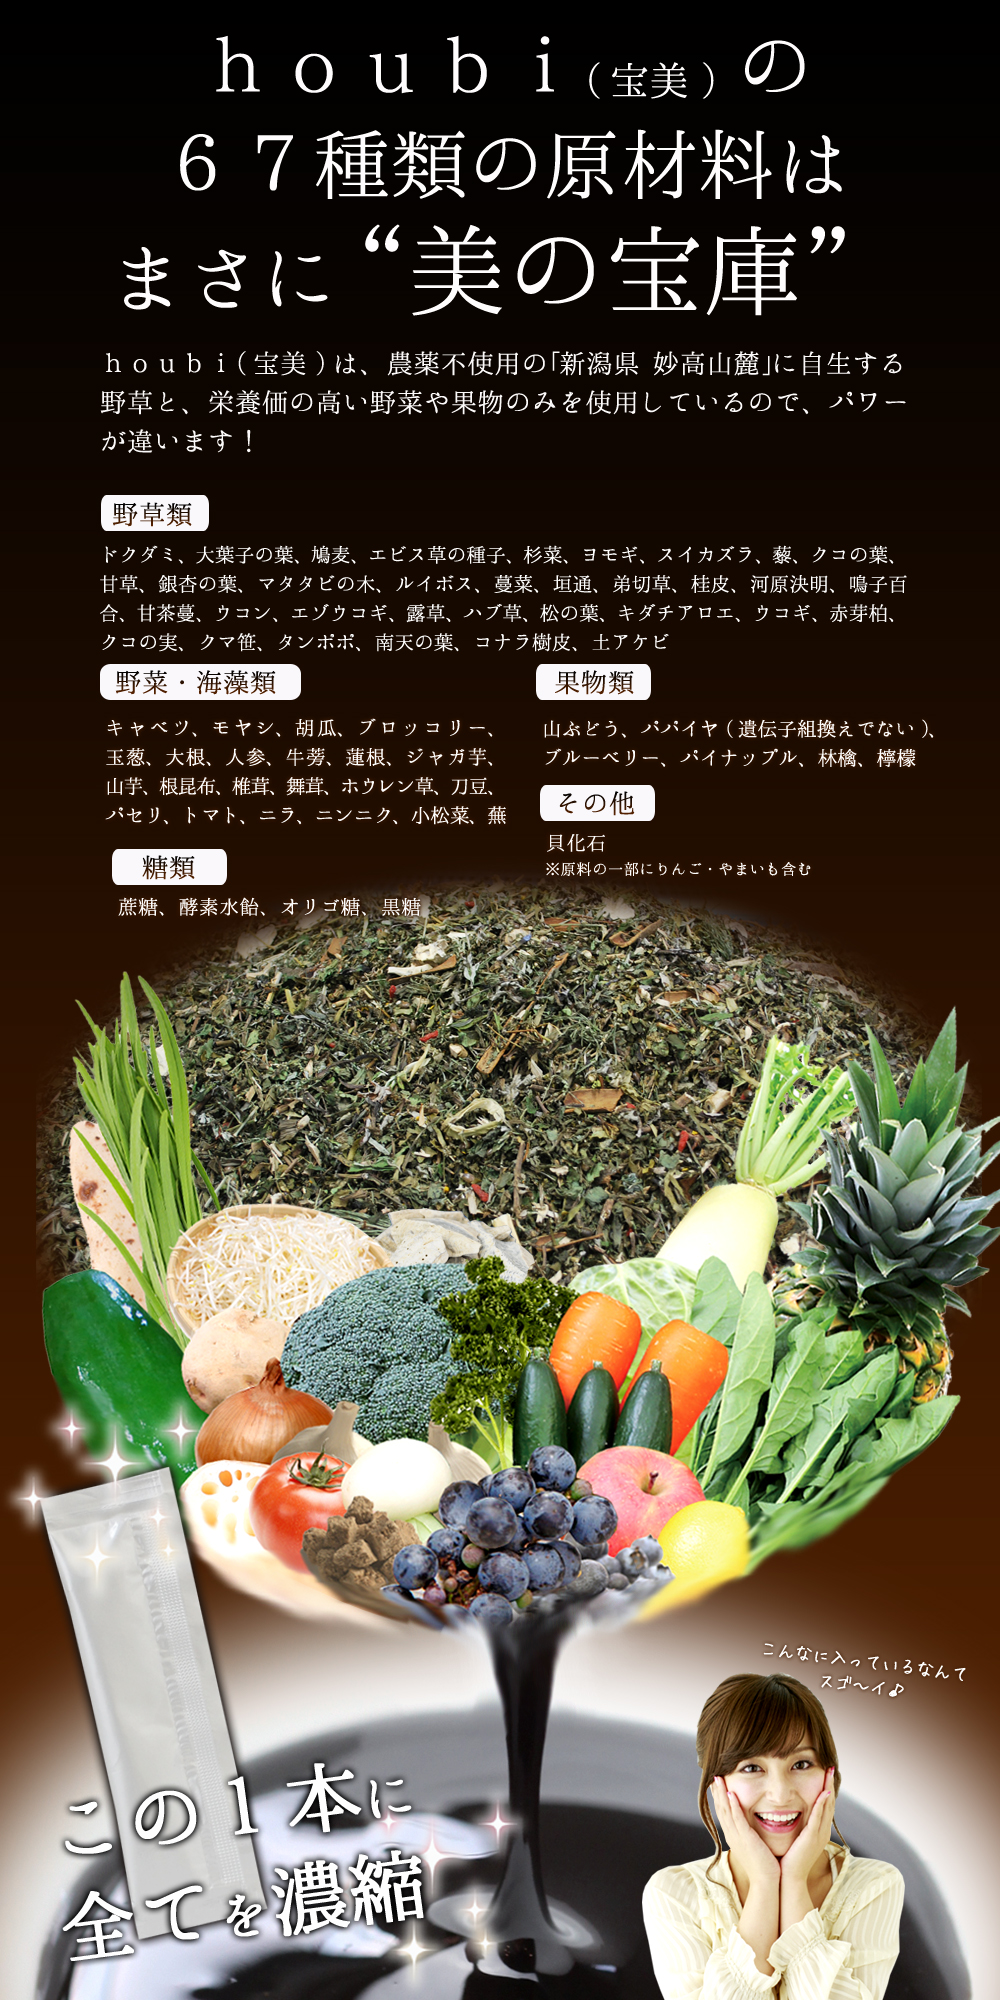 houbi(宝美)の67種類の原材料はまさに“美の宝庫”houbi(宝美)は、農薬不使用の｢新潟県 妙高山麓｣に自生する野草と栄養価の高い野菜や果物のみを使用しているので、パワーが違います！